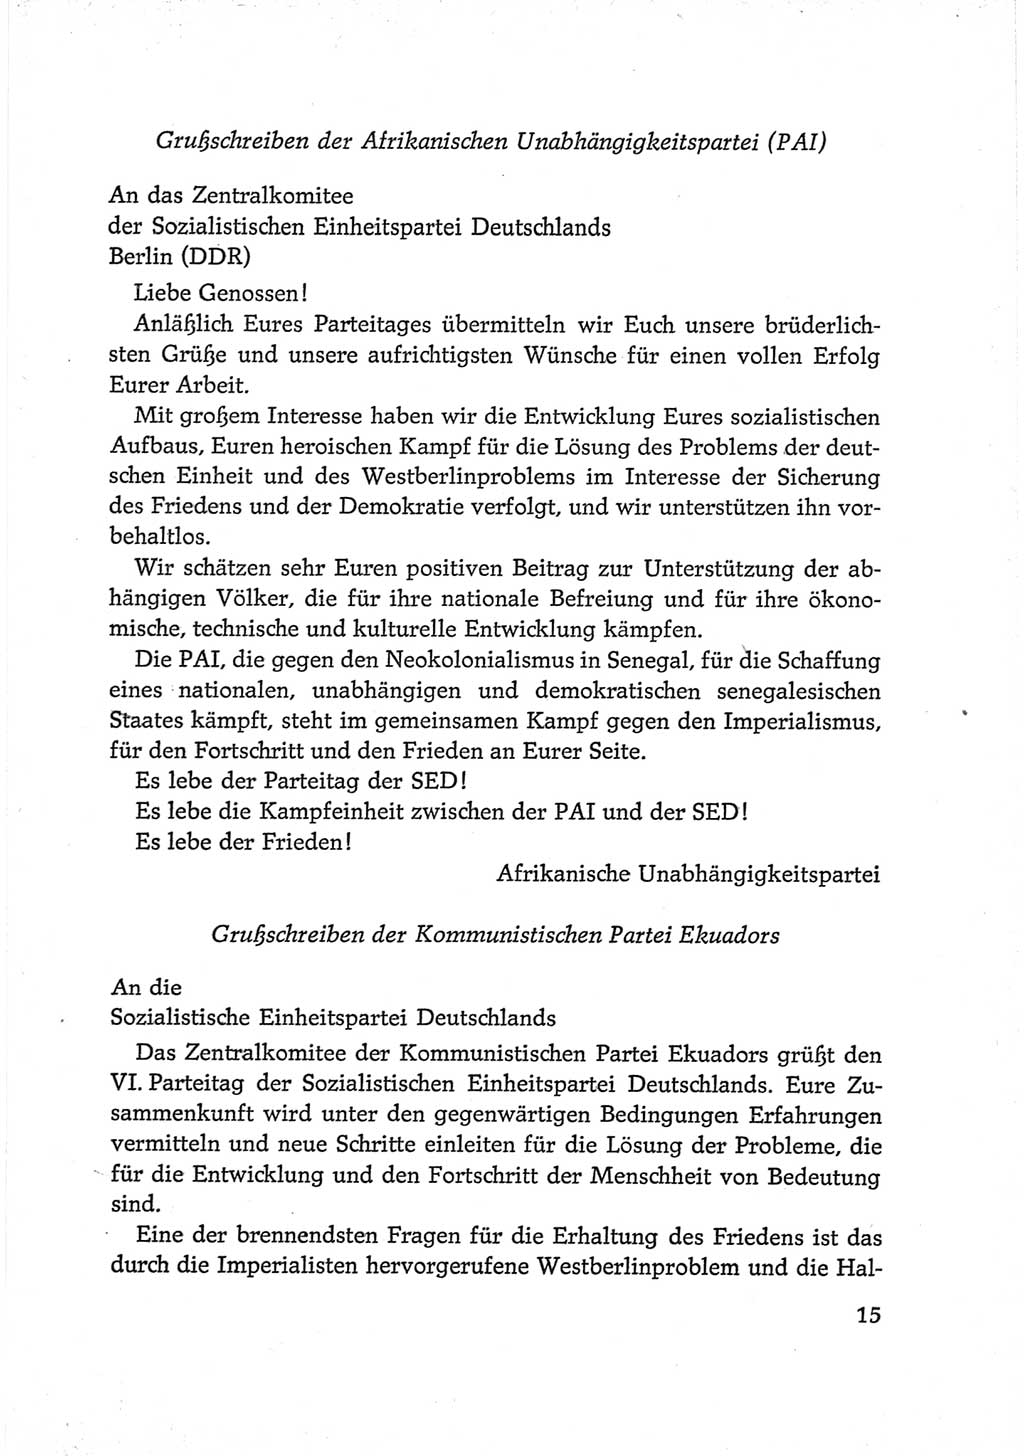 Protokoll der Verhandlungen des Ⅵ. Parteitages der Sozialistischen Einheitspartei Deutschlands (SED) [Deutsche Demokratische Republik (DDR)] 1963, Band Ⅲ, Seite 15 (Prot. Verh. Ⅵ. PT SED DDR 1963, Bd. Ⅲ, S. 15)